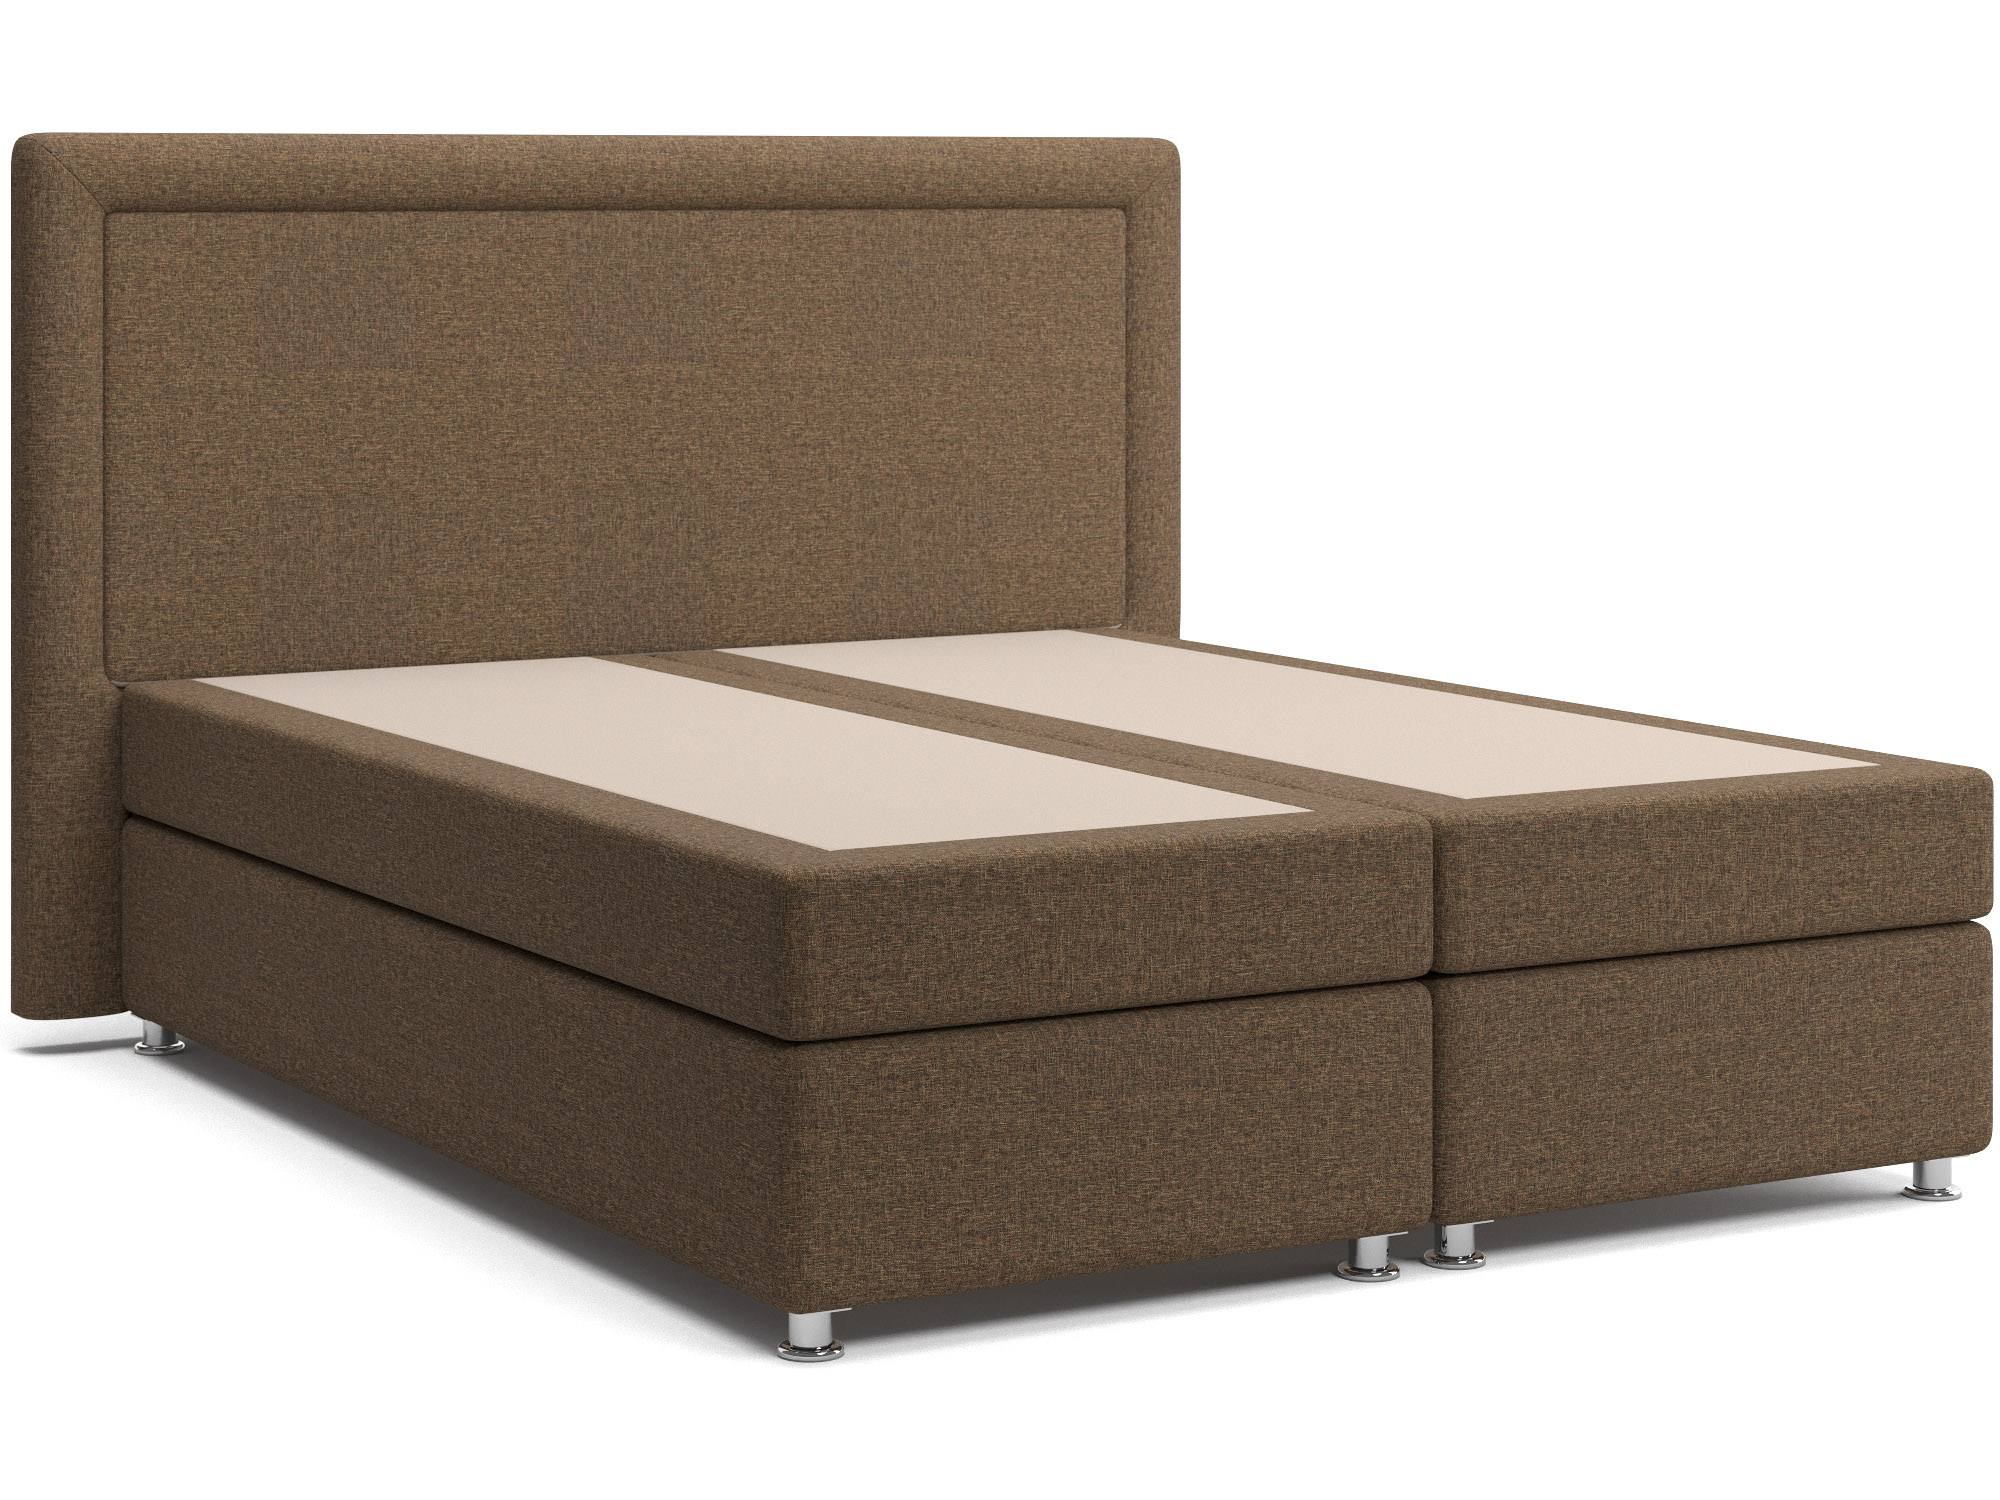 Кровать с матрасом и зависимым пружинным блоком Оливия (160х200) Box Spring Коричневый, ДСП, ДВП кресло оливия лайт сэнд фанера